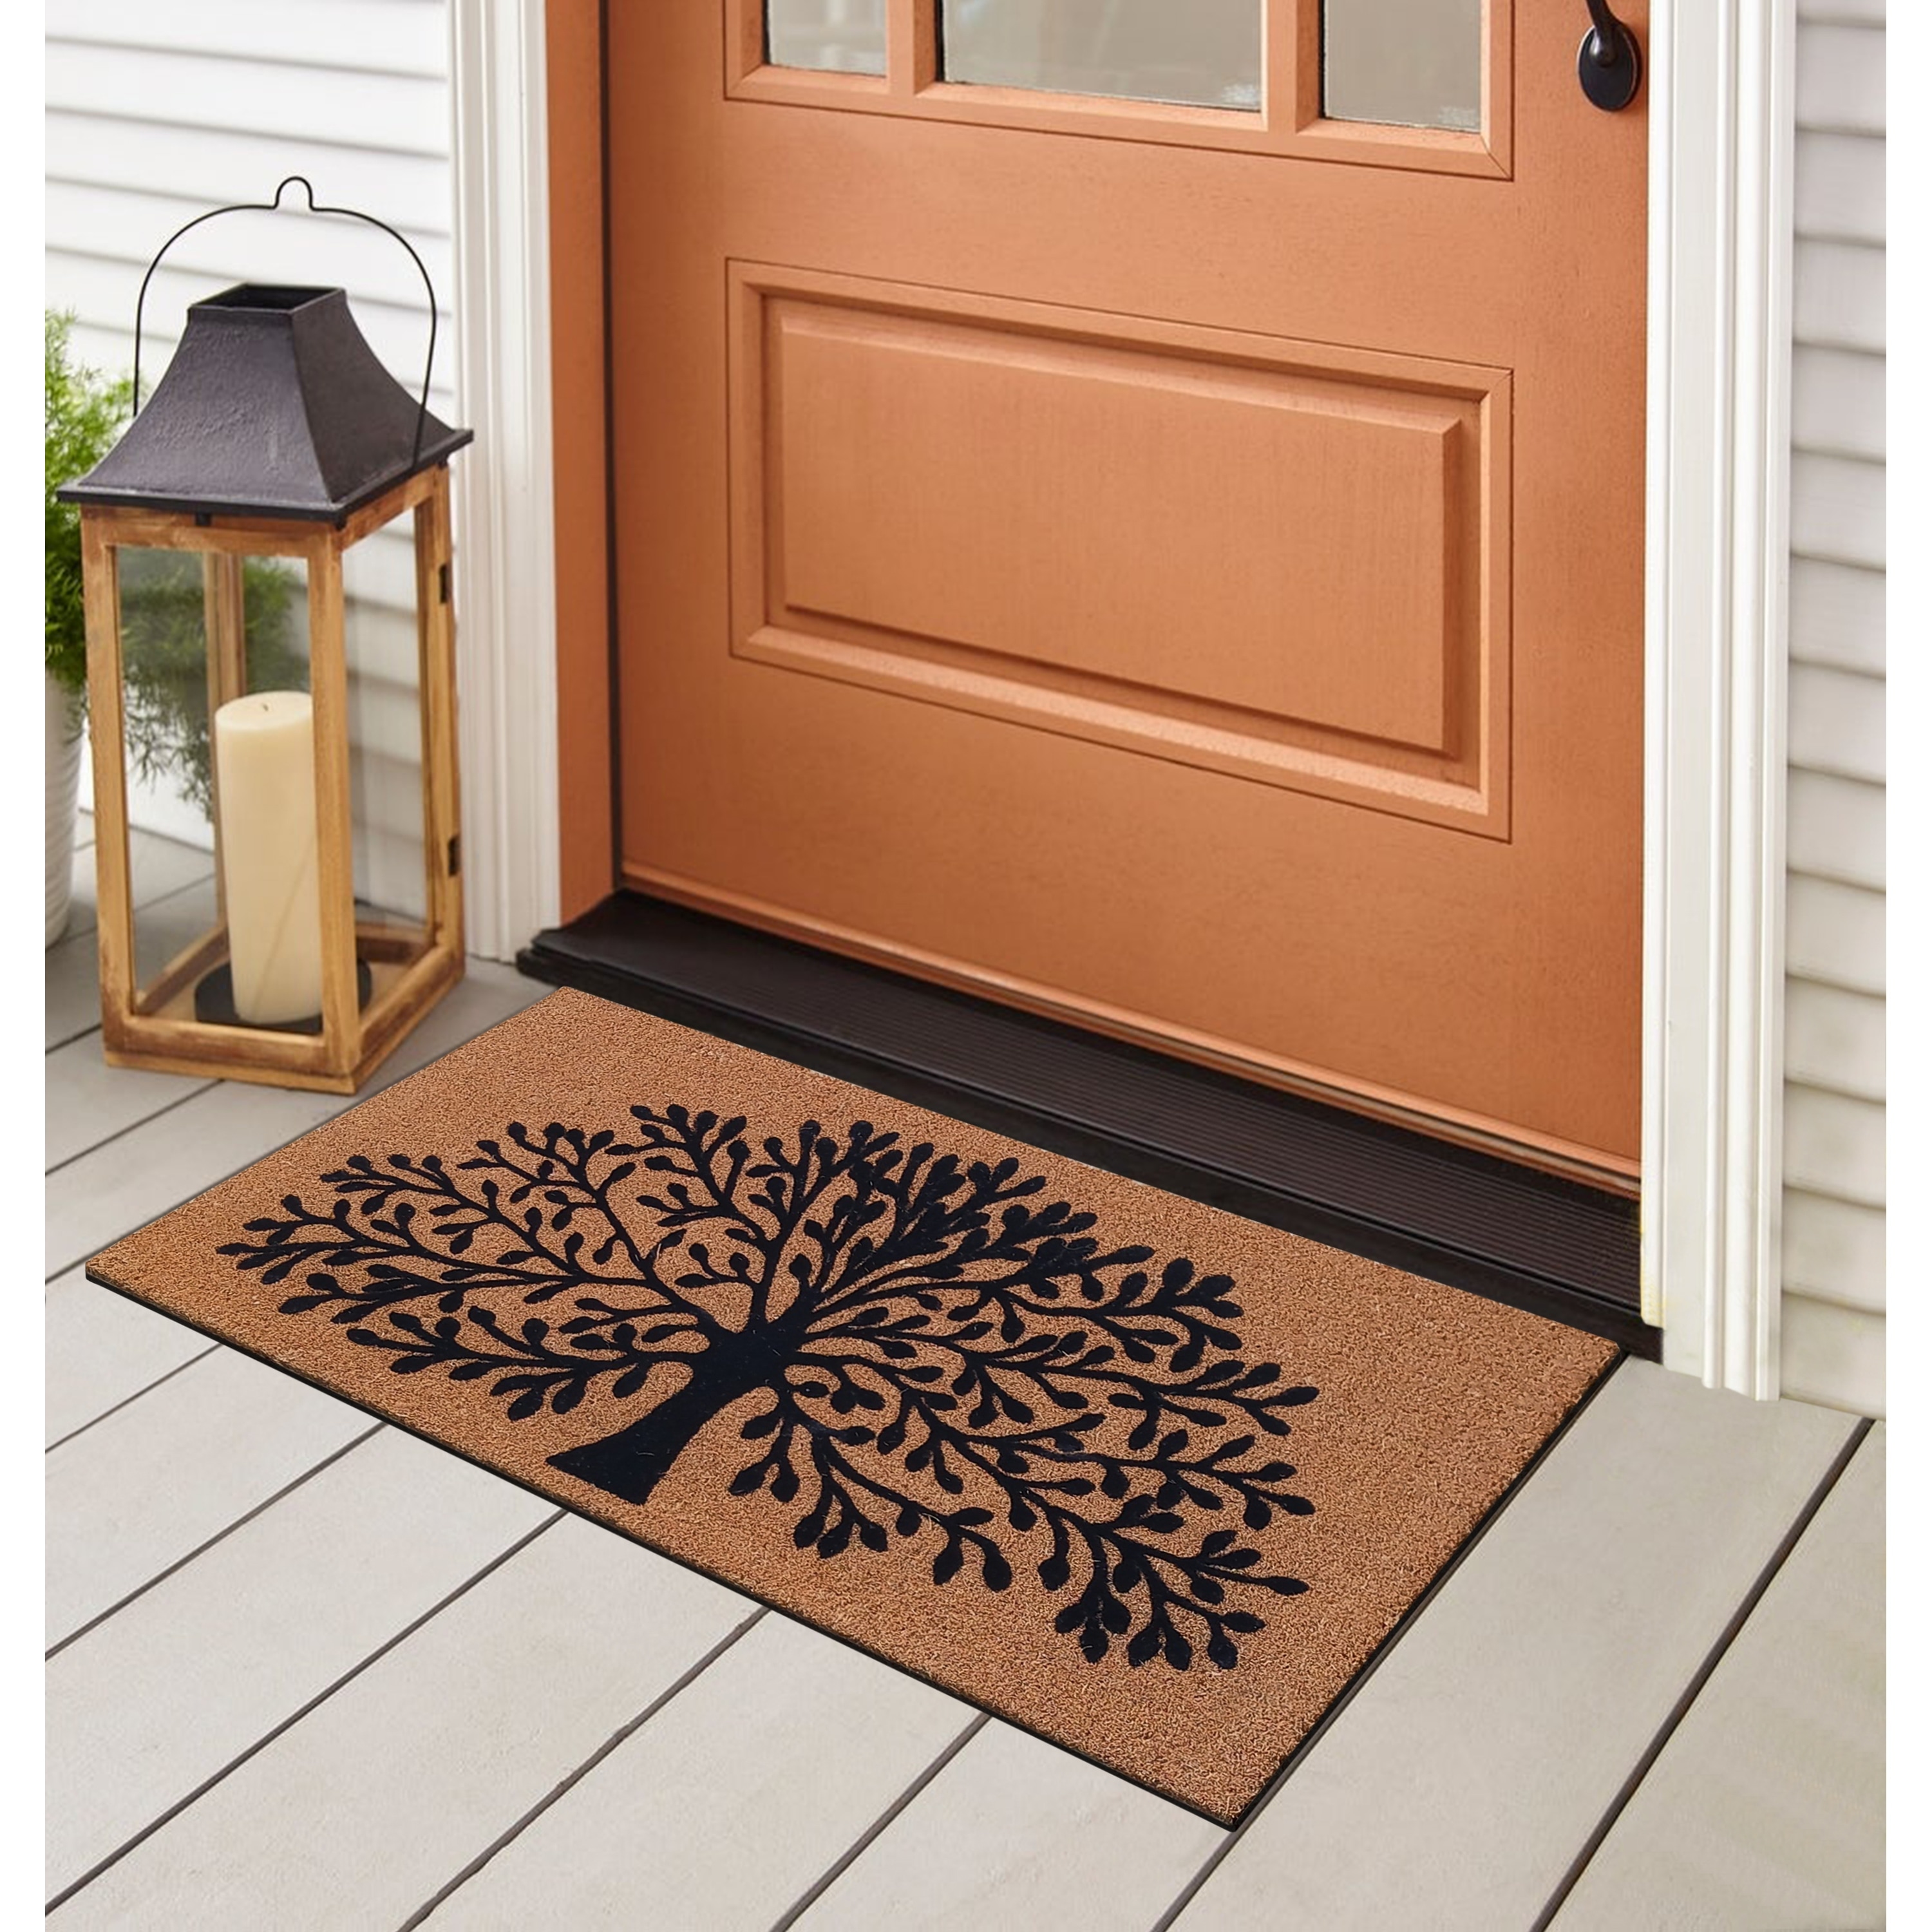 https://ak1.ostkcdn.com/images/products/is/images/direct/7fbd7b3ca722da3713d593fa61adf7d8fb9f87ac/A1HC-Entrance-Door-Mats%2C-Durable-Large-Outdoor-Rug%2C-Non-Slip%2C-Flock-Doormat%2C-Heavy-Duty-Door-Mat%2C-Indoor-Outdoor-Front-Door.jpg